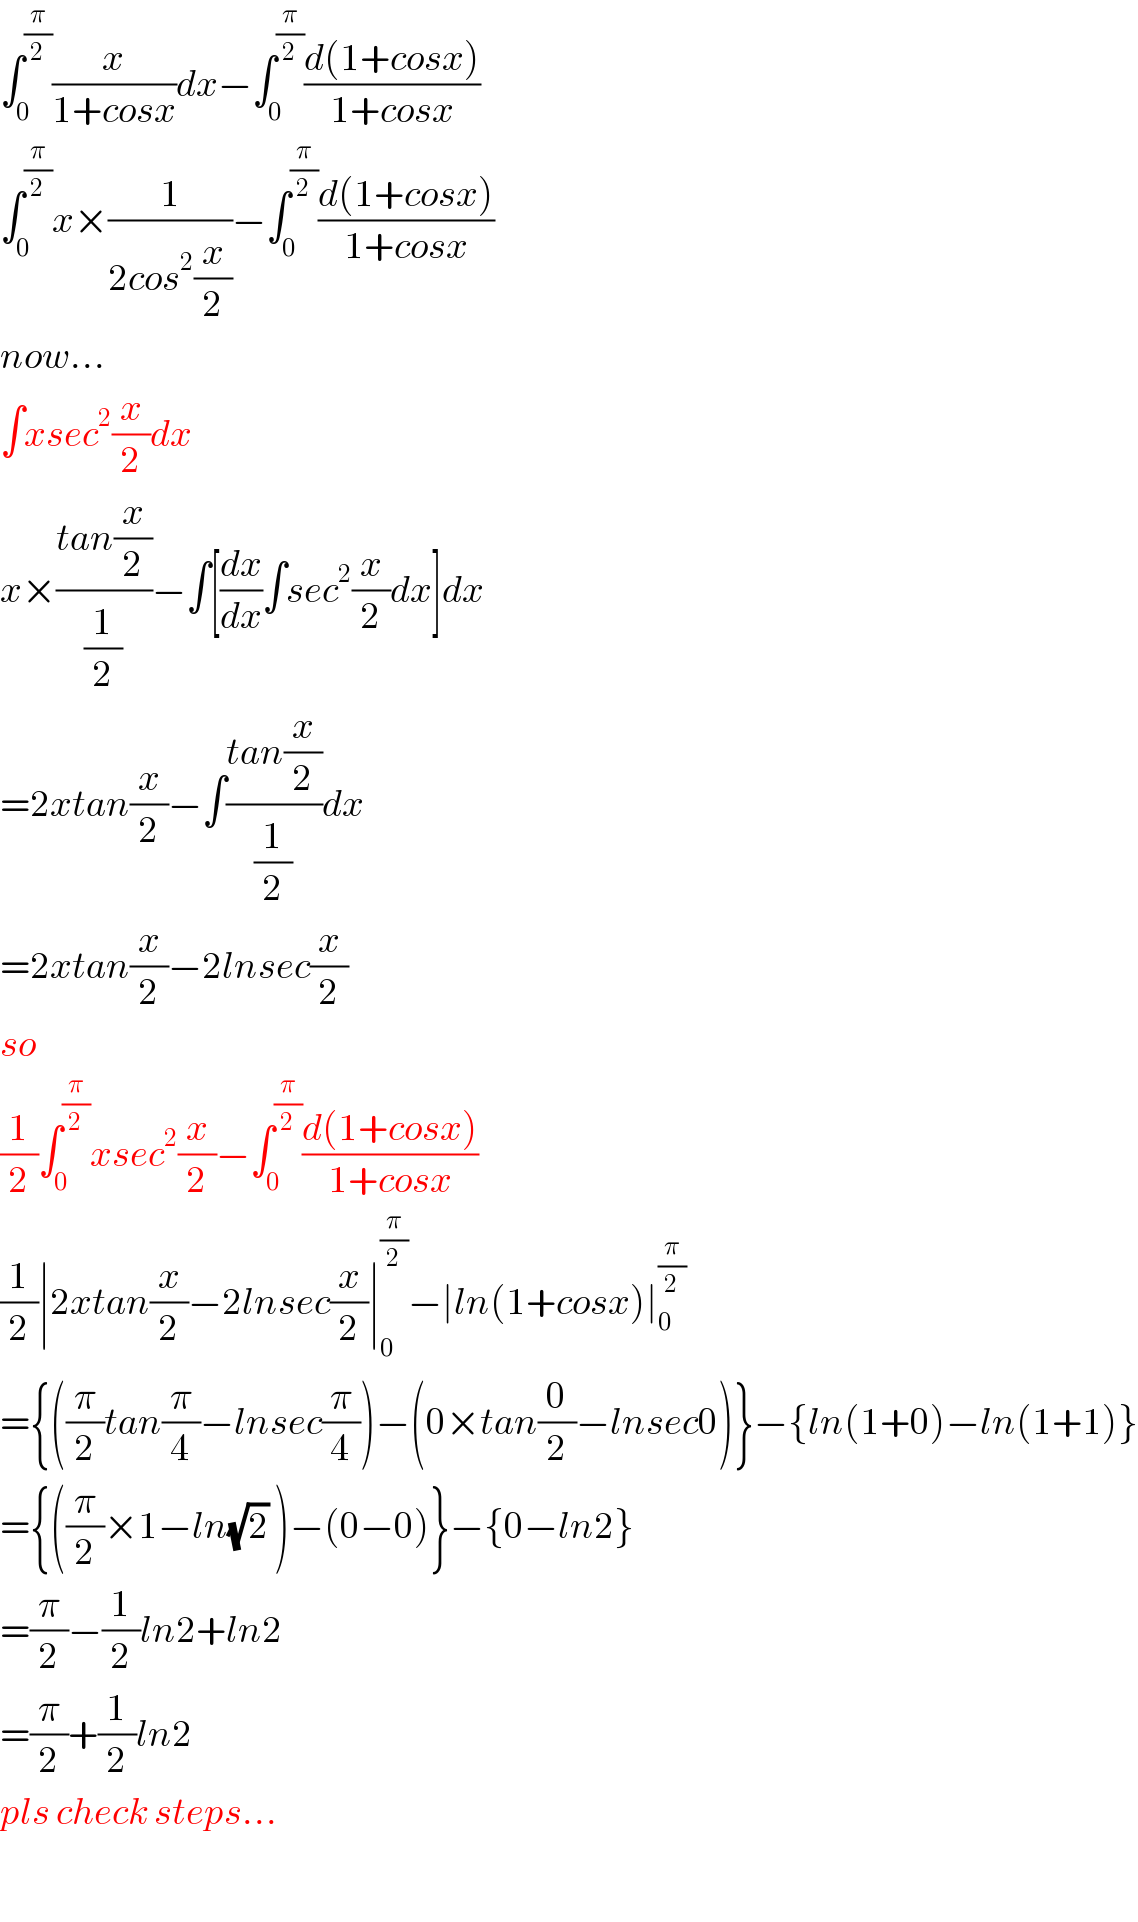 ∫_0 ^(π/2) (x/(1+cosx))dx−∫_0 ^(π/2) ((d(1+cosx))/(1+cosx))  ∫_0 ^(π/2) x×(1/(2cos^2 (x/2)))−∫_0 ^(π/2) ((d(1+cosx))/(1+cosx))  now...  ∫xsec^2 (x/2)dx  x×((tan(x/2))/(1/2))−∫[(dx/dx)∫sec^2 (x/2)dx]dx  =2xtan(x/2)−∫((tan(x/2))/(1/2))dx  =2xtan(x/2)−2lnsec(x/2)  so  (1/2)∫_0 ^(π/2) xsec^2 (x/2)−∫_0 ^(π/2) ((d(1+cosx))/(1+cosx))  (1/2)∣2xtan(x/2)−2lnsec(x/2)∣_0 ^(π/2) −∣ln(1+cosx)∣_0 ^(π/2)   ={((π/2)tan(π/4)−lnsec(π/4))−(0×tan(0/2)−lnsec0)}−{ln(1+0)−ln(1+1)}  ={((π/2)×1−ln(√2) )−(0−0)}−{0−ln2}  =(π/2)−(1/2)ln2+ln2  =(π/2)+(1/2)ln2  pls check steps...    